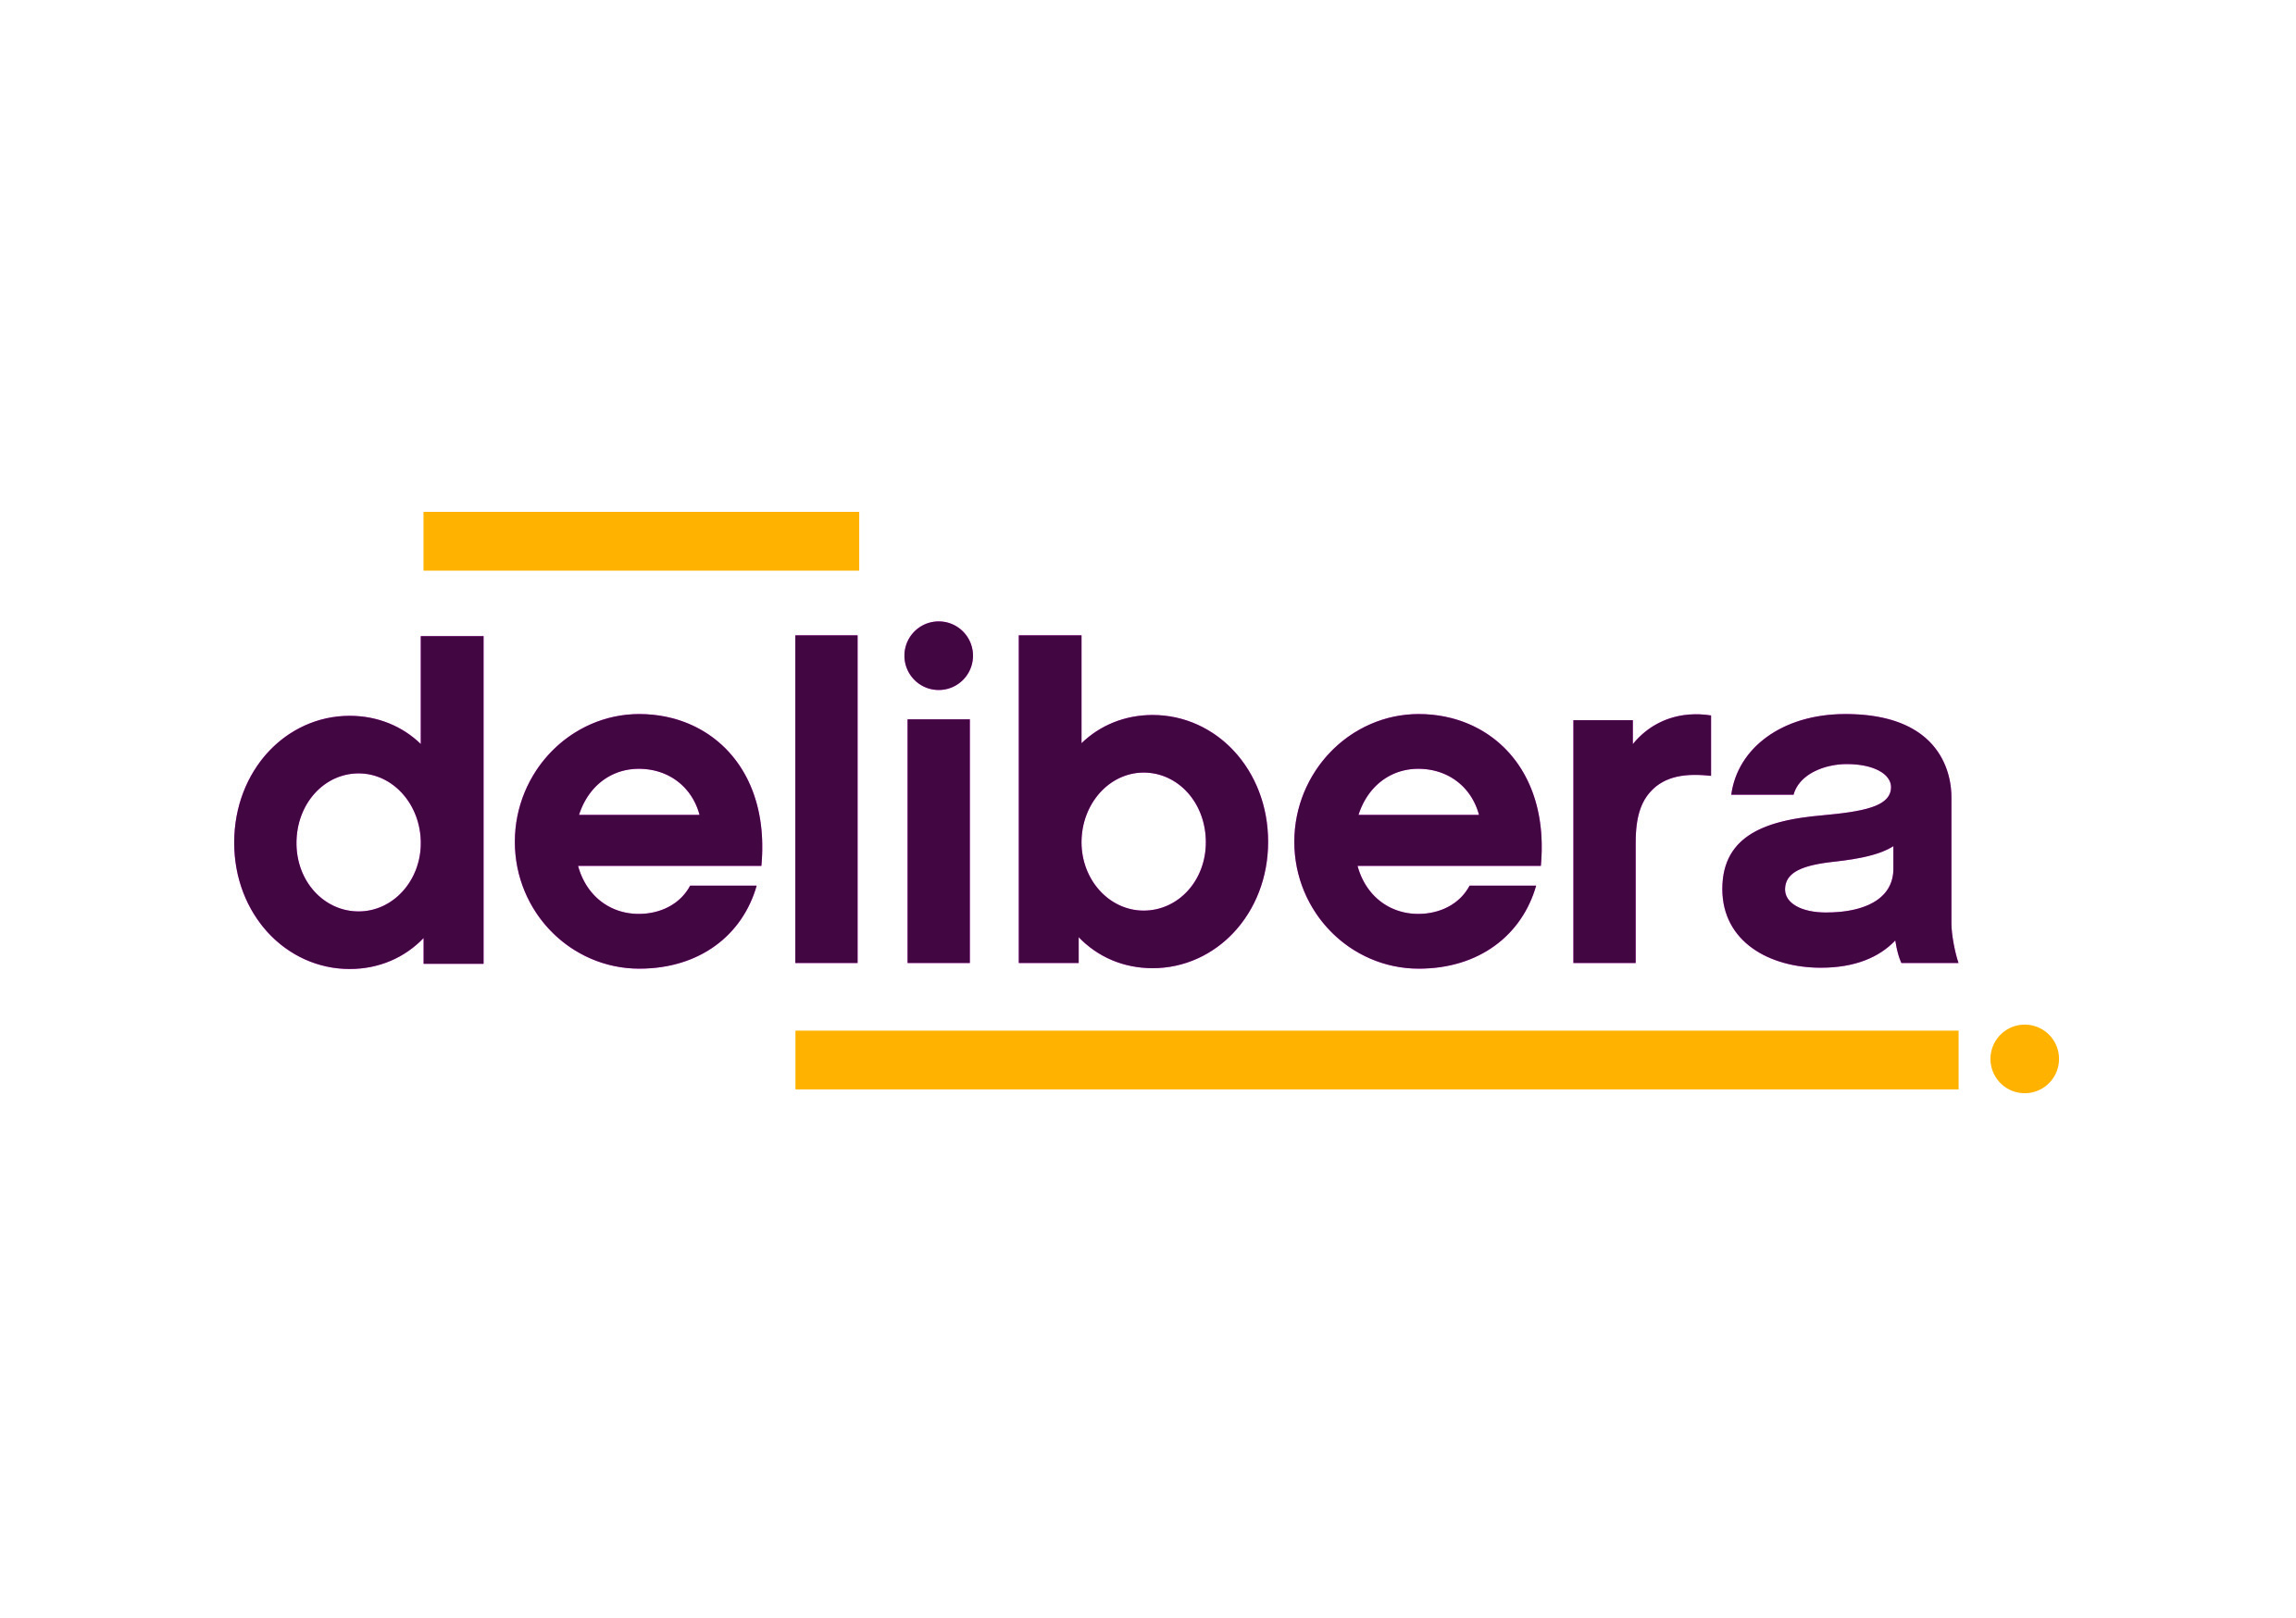 delibera_COR